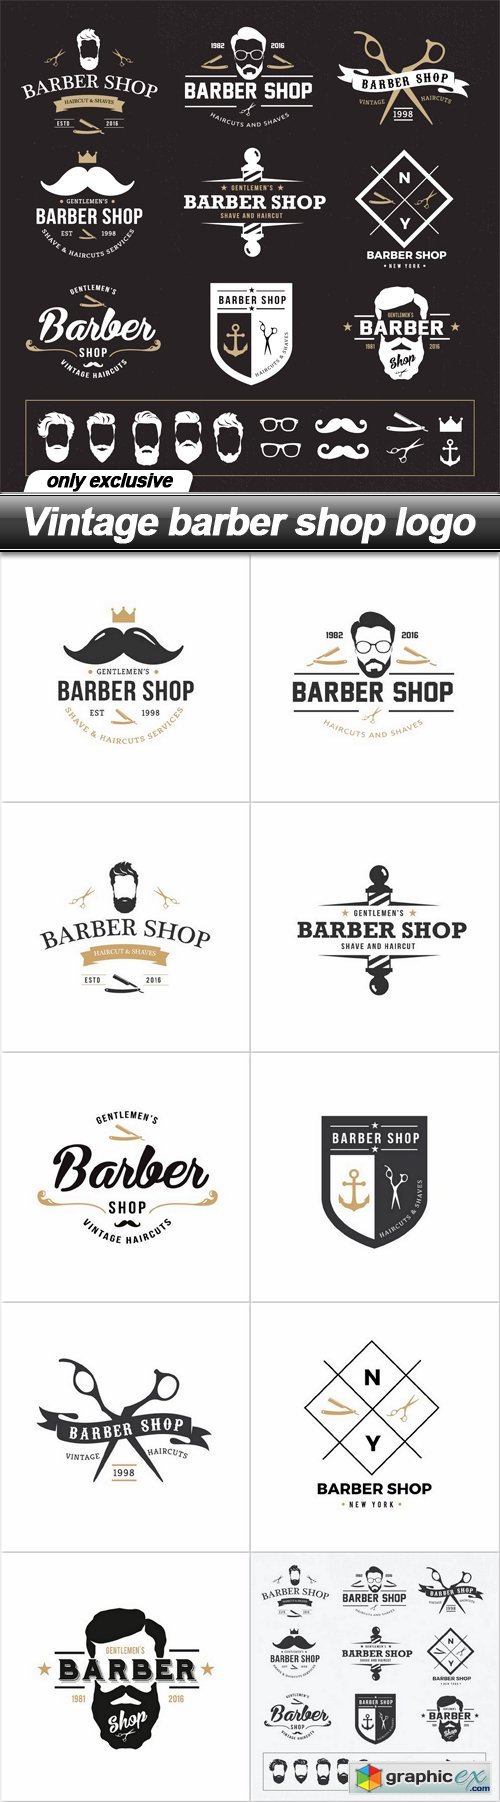 Vintage barber shop logo - 11 EPS